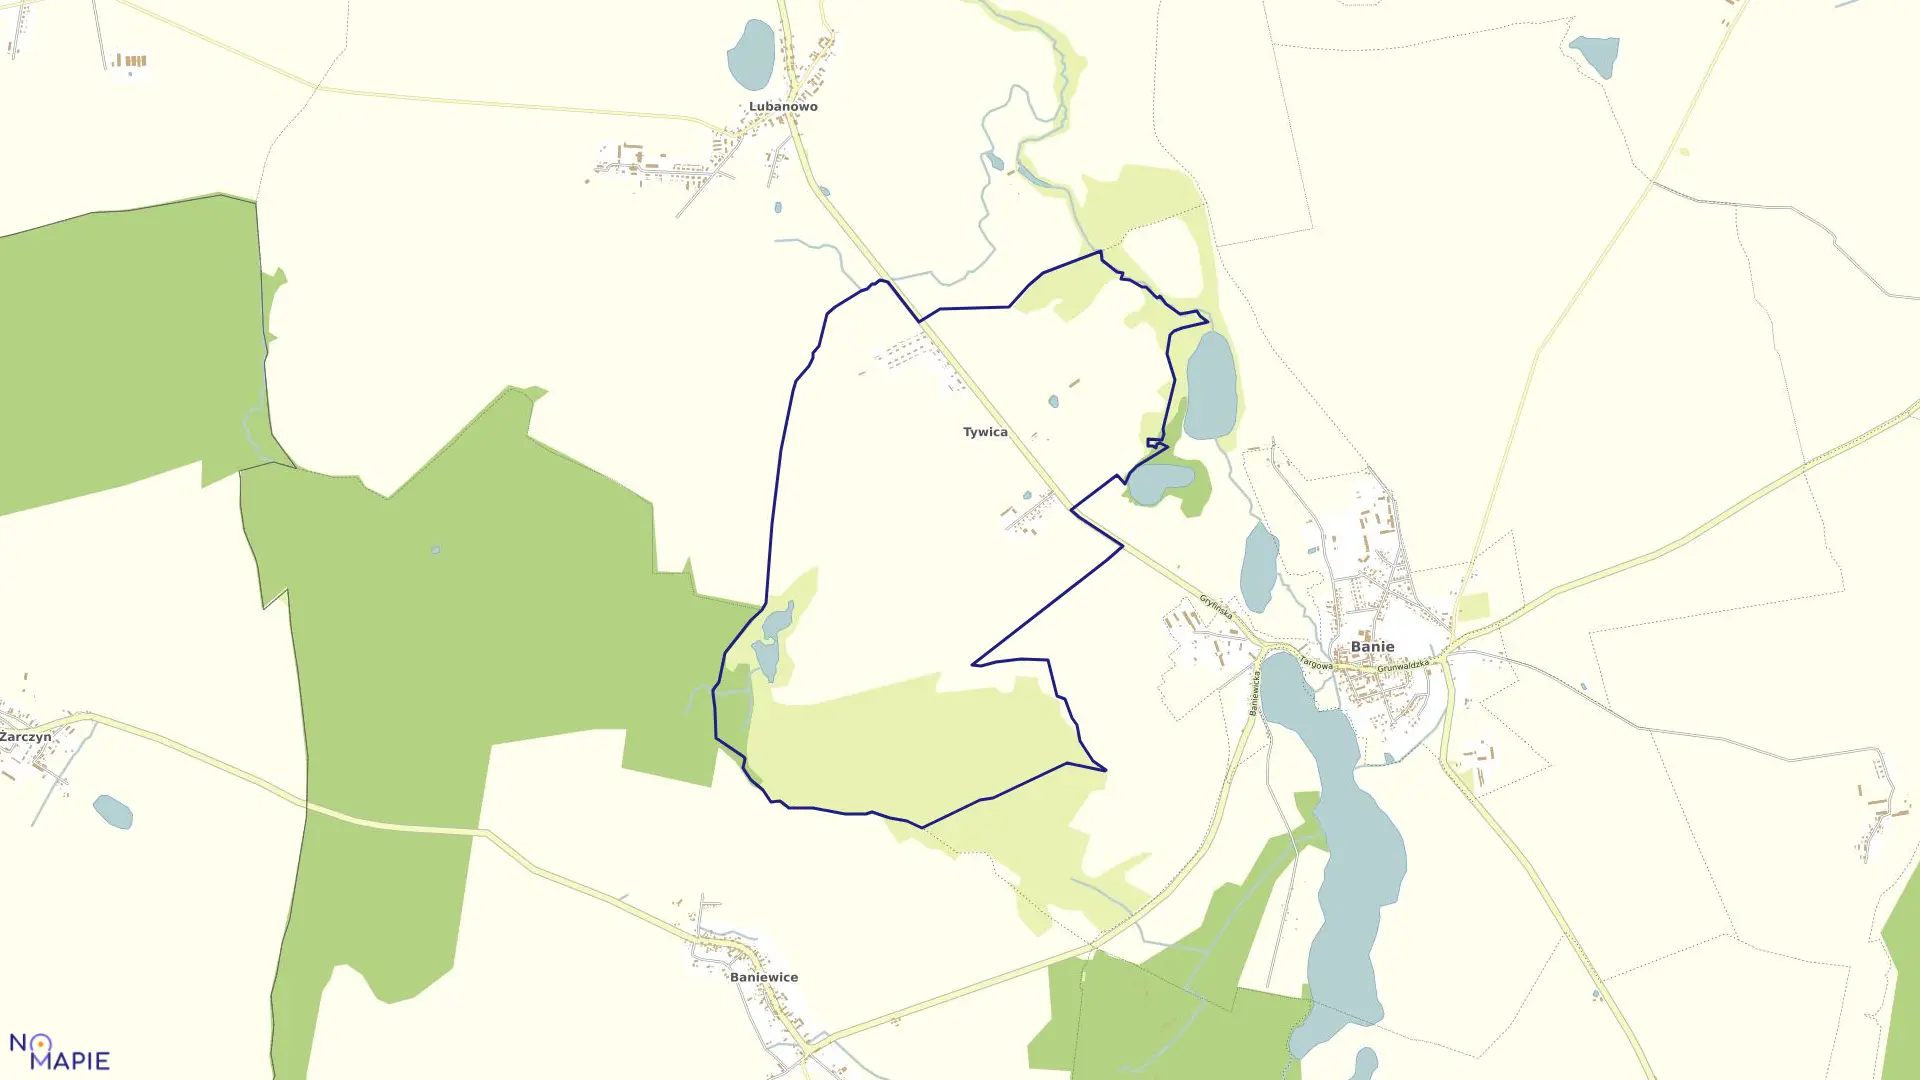 Mapa obrębu Tywica w gminie Banie